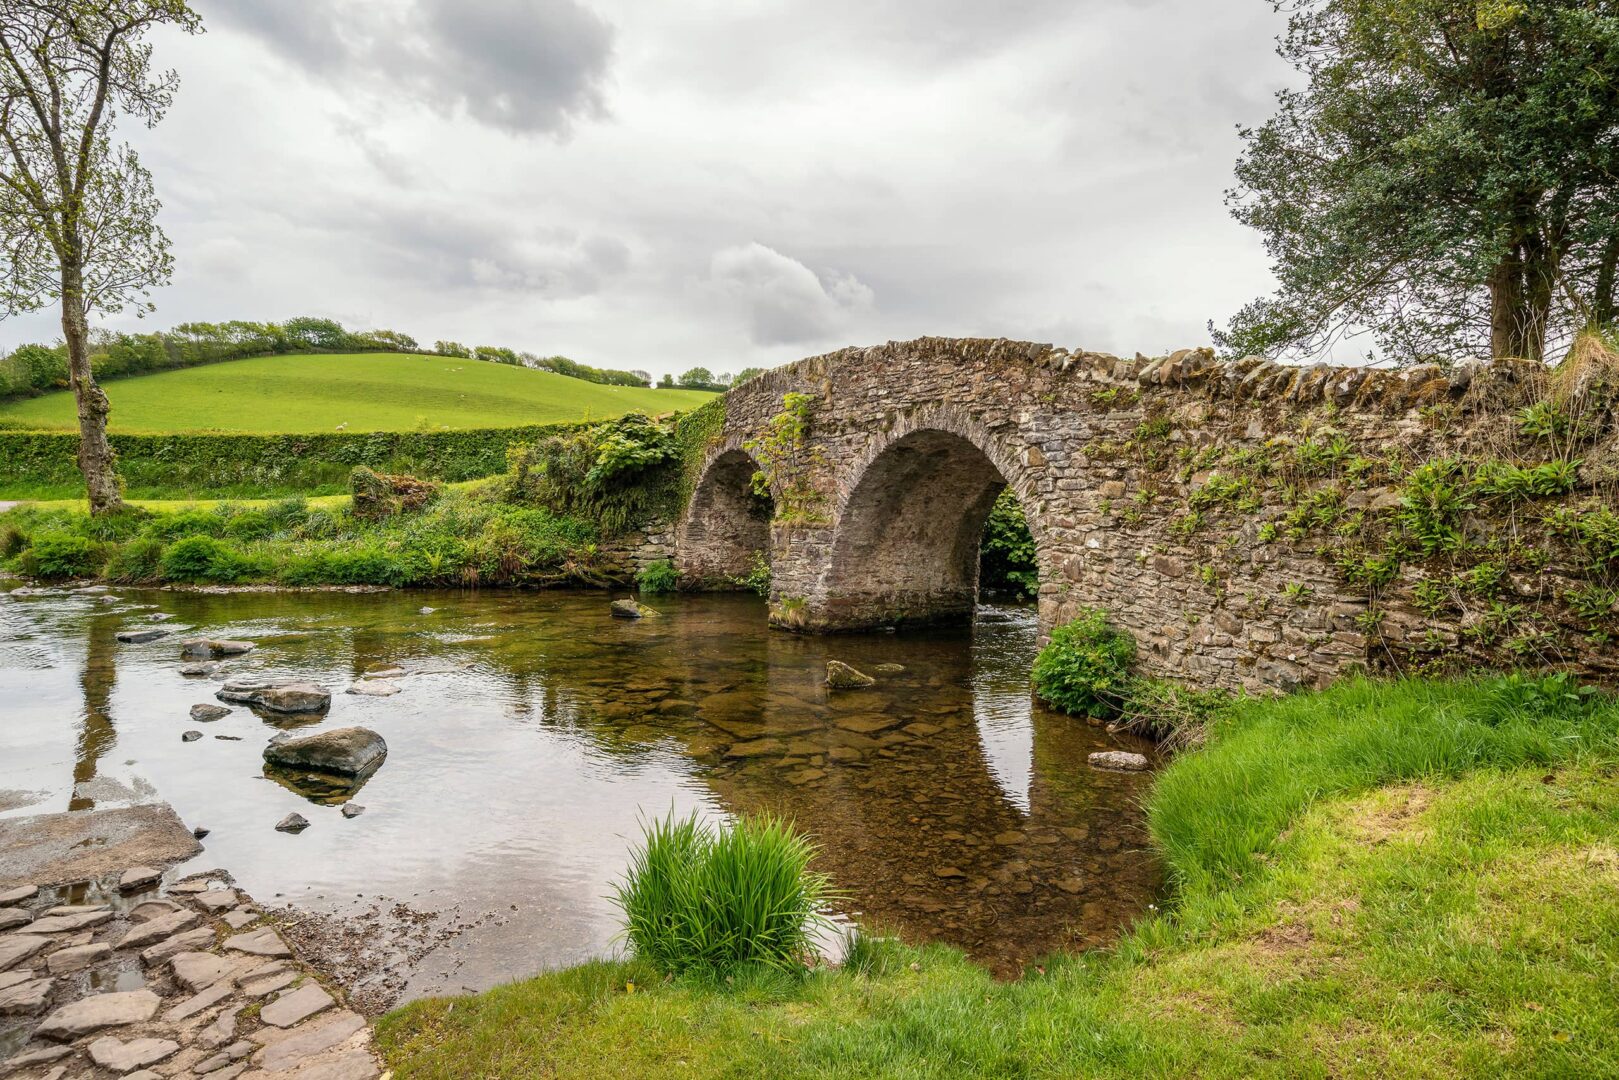 Stone bridge in English countryside